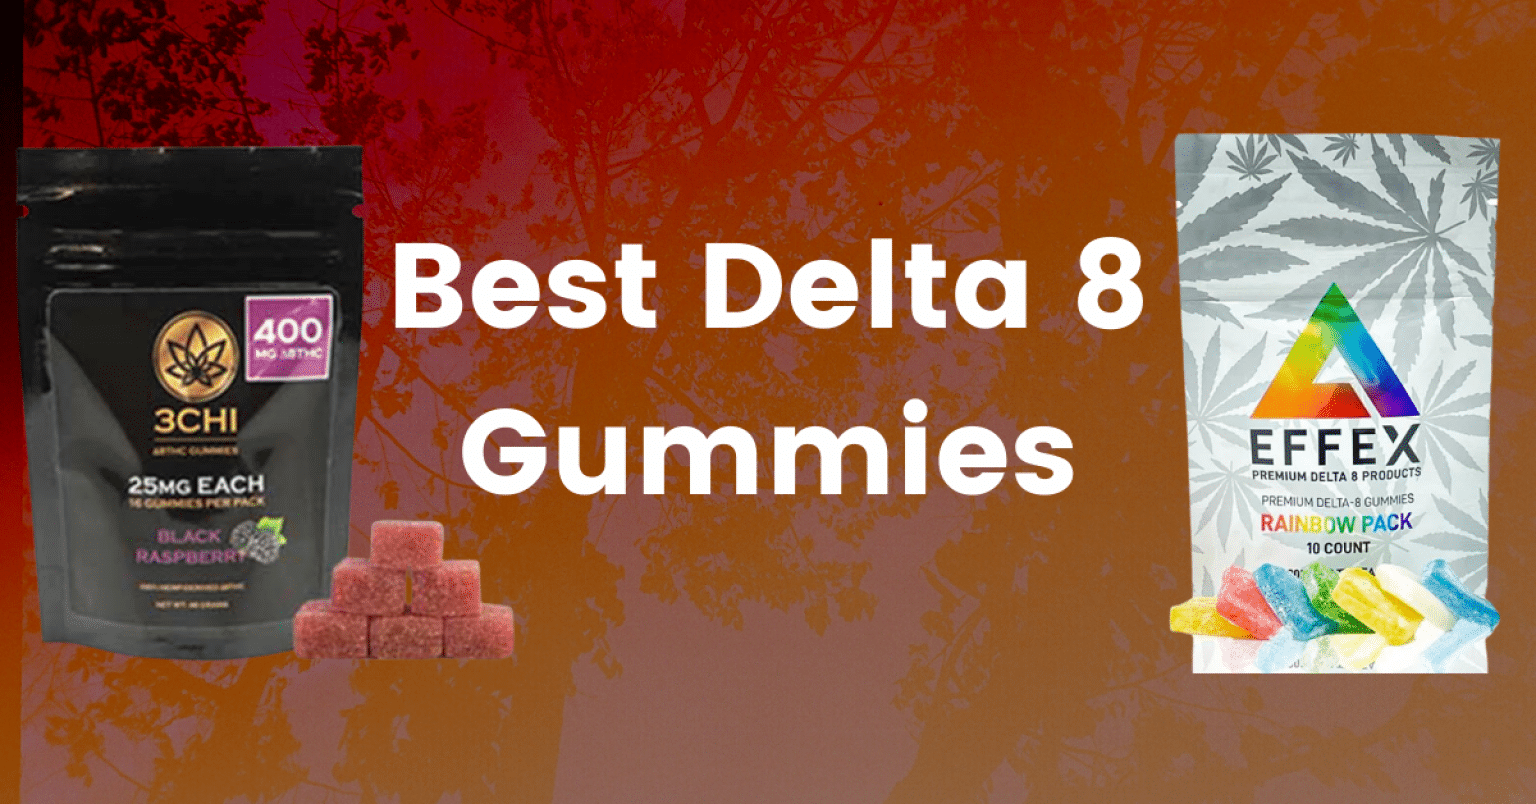 Best Delta 8 THC Gummies for 2021 - CBD Oil Users